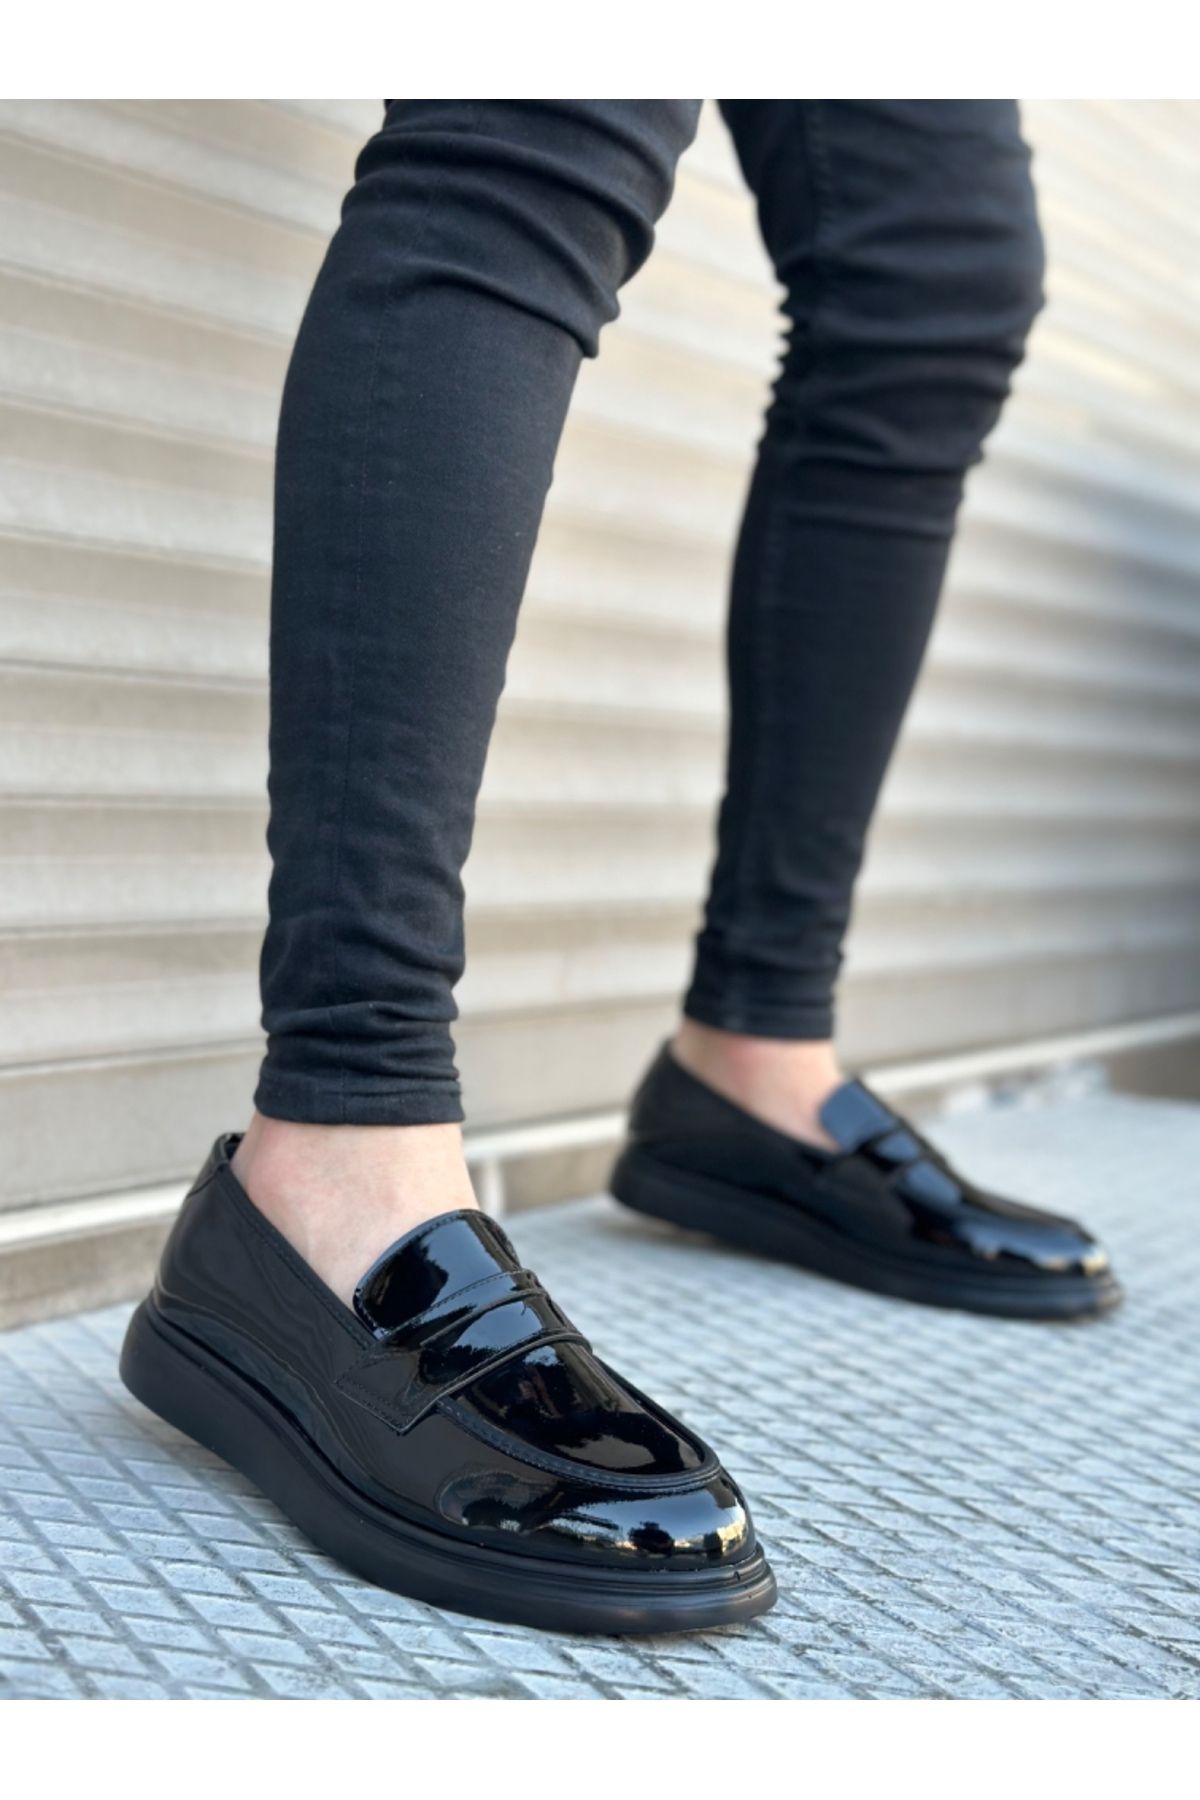 BOA Ba0316 Bağcıksız Yüksek Siyah Taban Klasik Cilt Corcik Erkek Ayakkabı